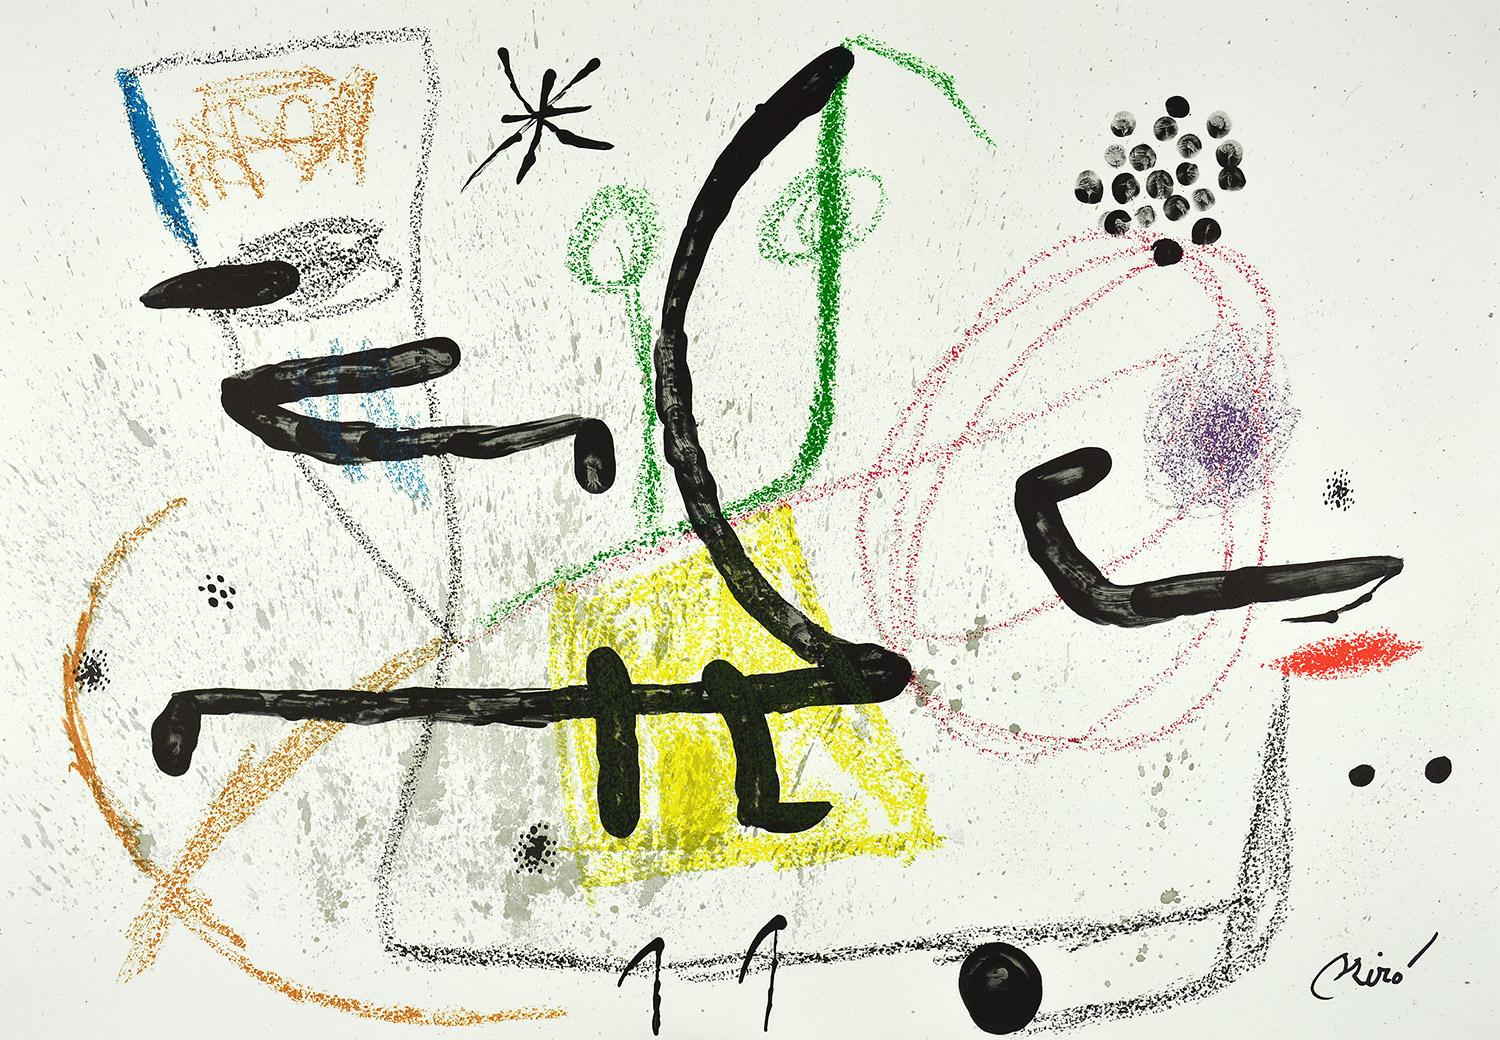 Joan Miró - Maravillas con variaciones acrósticas en el jardín de Miró IX
Date de création : 1975
Médium : Lithographie
Médias : Papier Gvarro
Édition : 1500
Taille : 49,5 x 71 cm
Observations :
Lithographie sur plaque de papier Gvarro signée. Édité